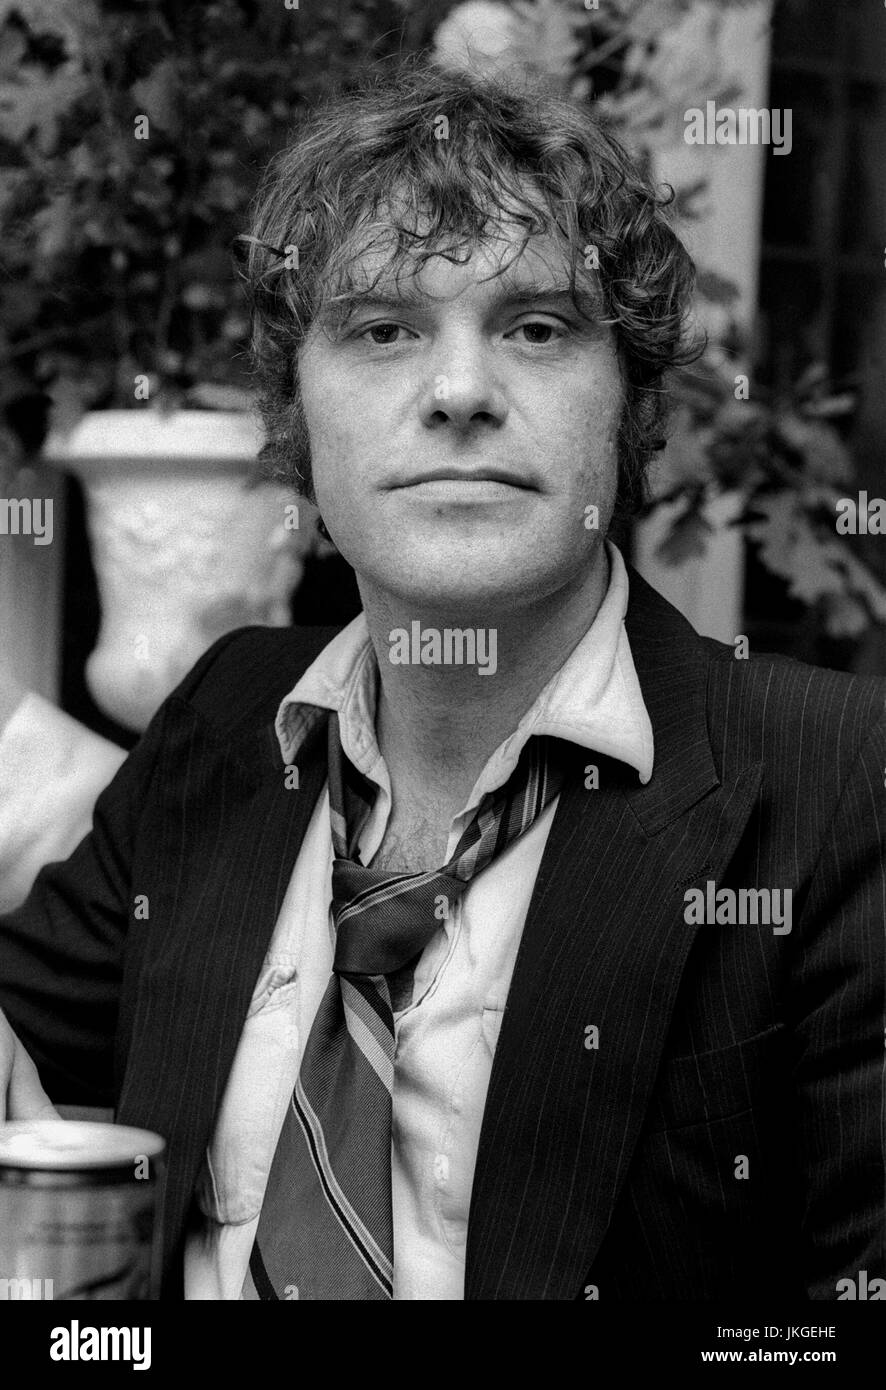 KIM LARSEN musicien et chanteur de rock danois dans la bande de l'essence à un disque d'or à Stockholm 1981 Banque D'Images